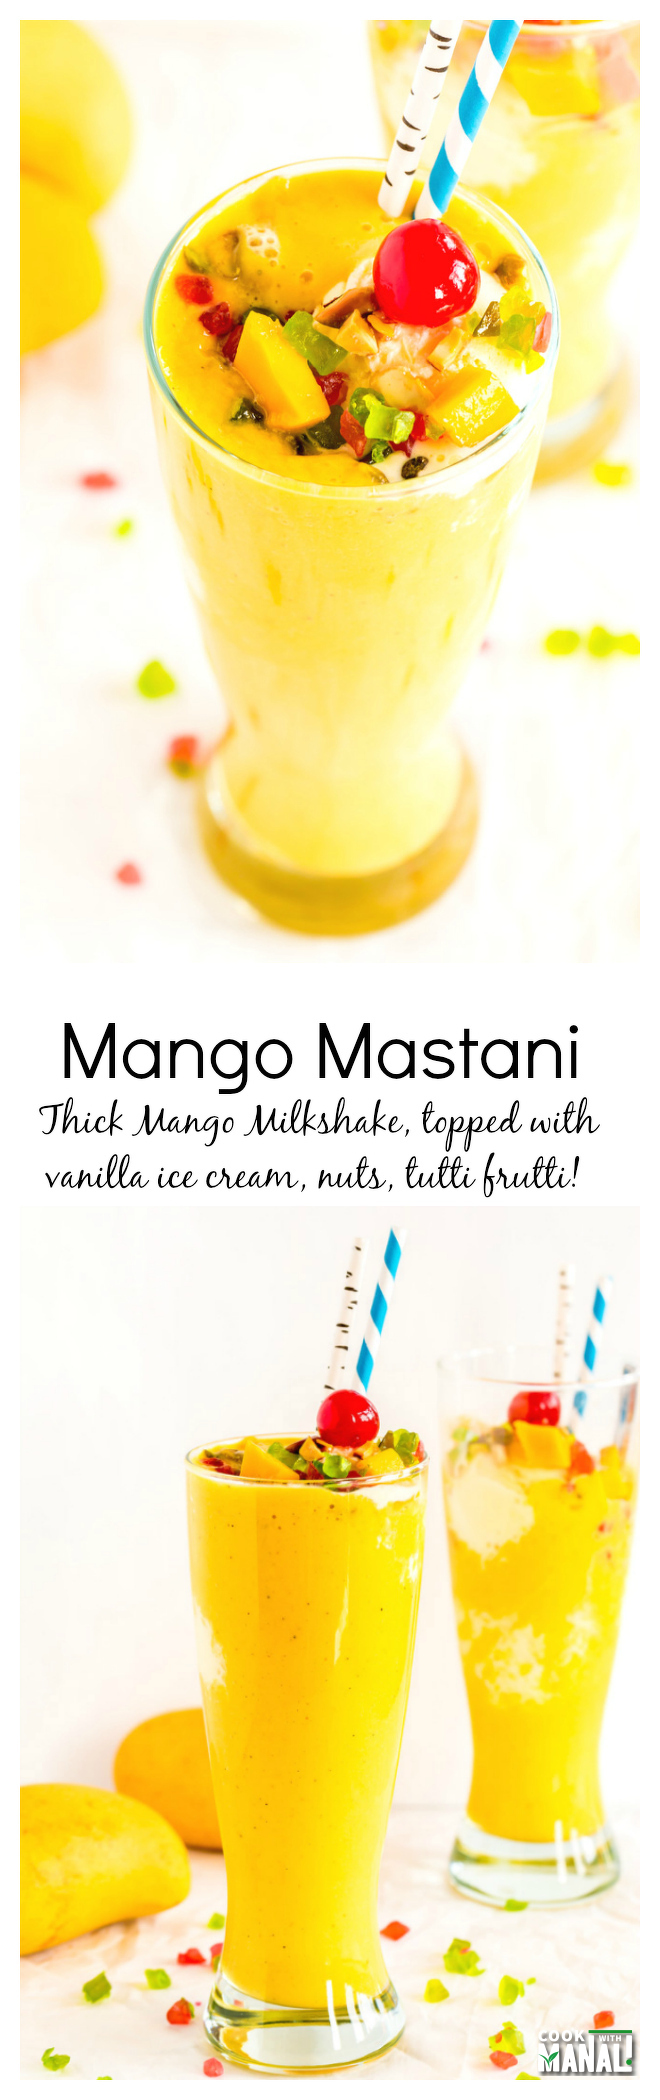 Mango Mastani Collage